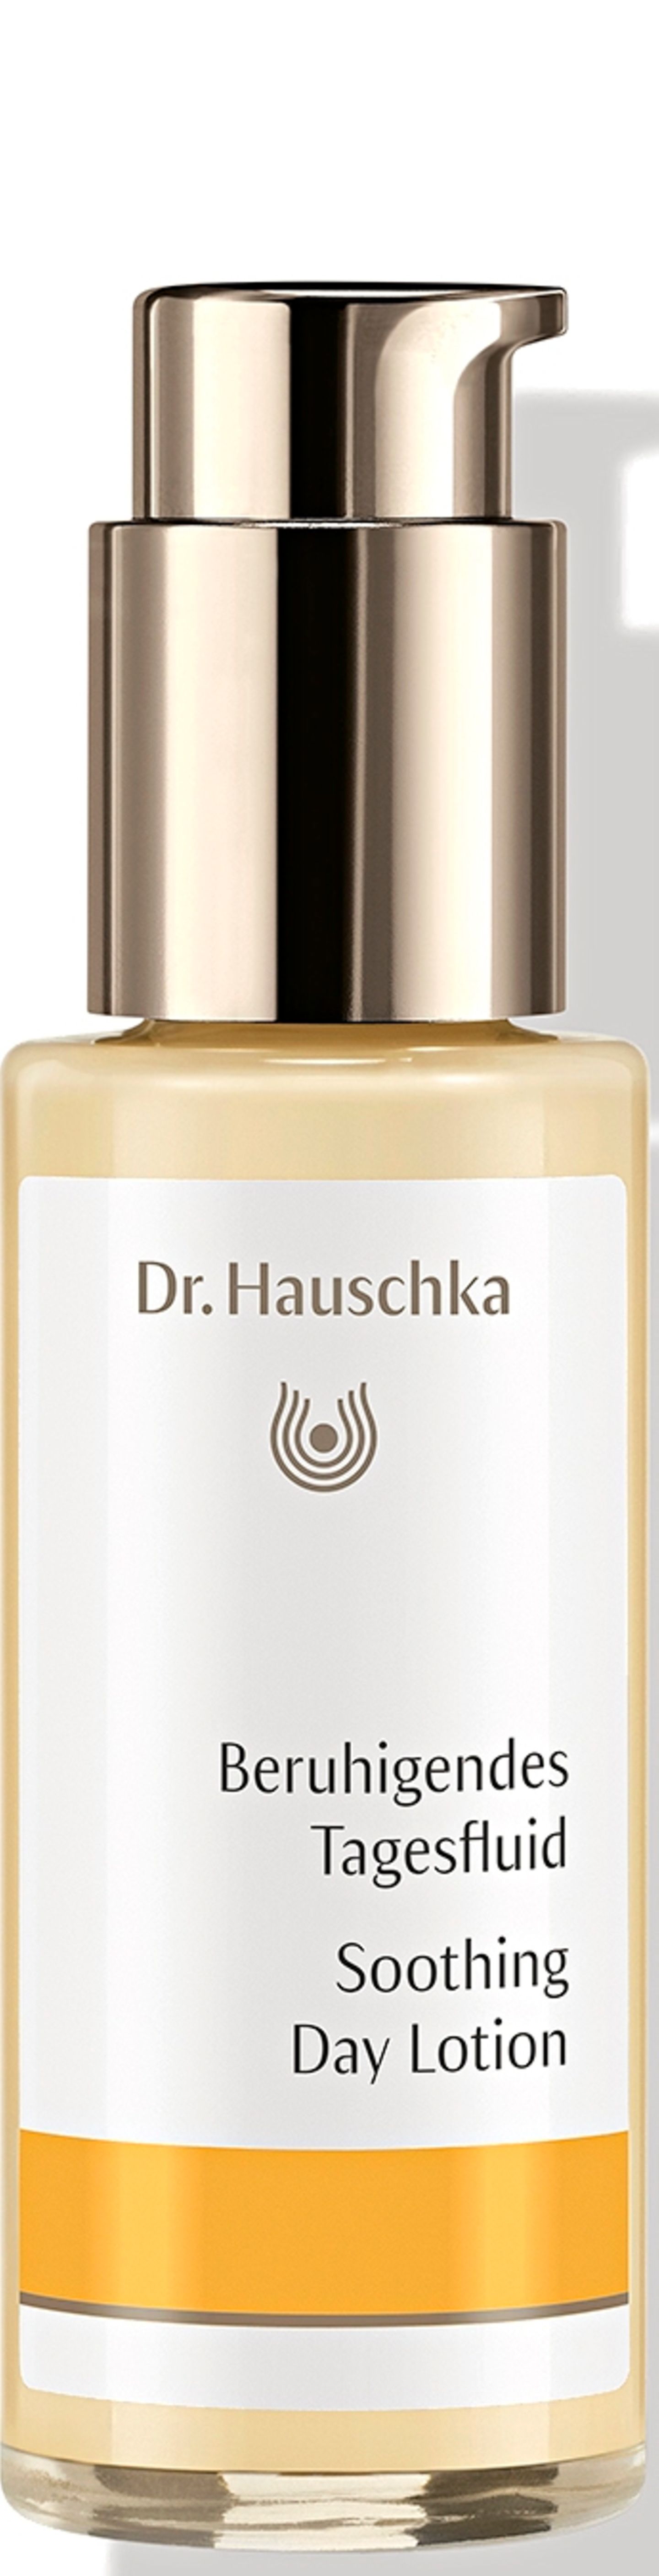 „Beruhigendes Tagesfluid“ von Dr. Hauschka